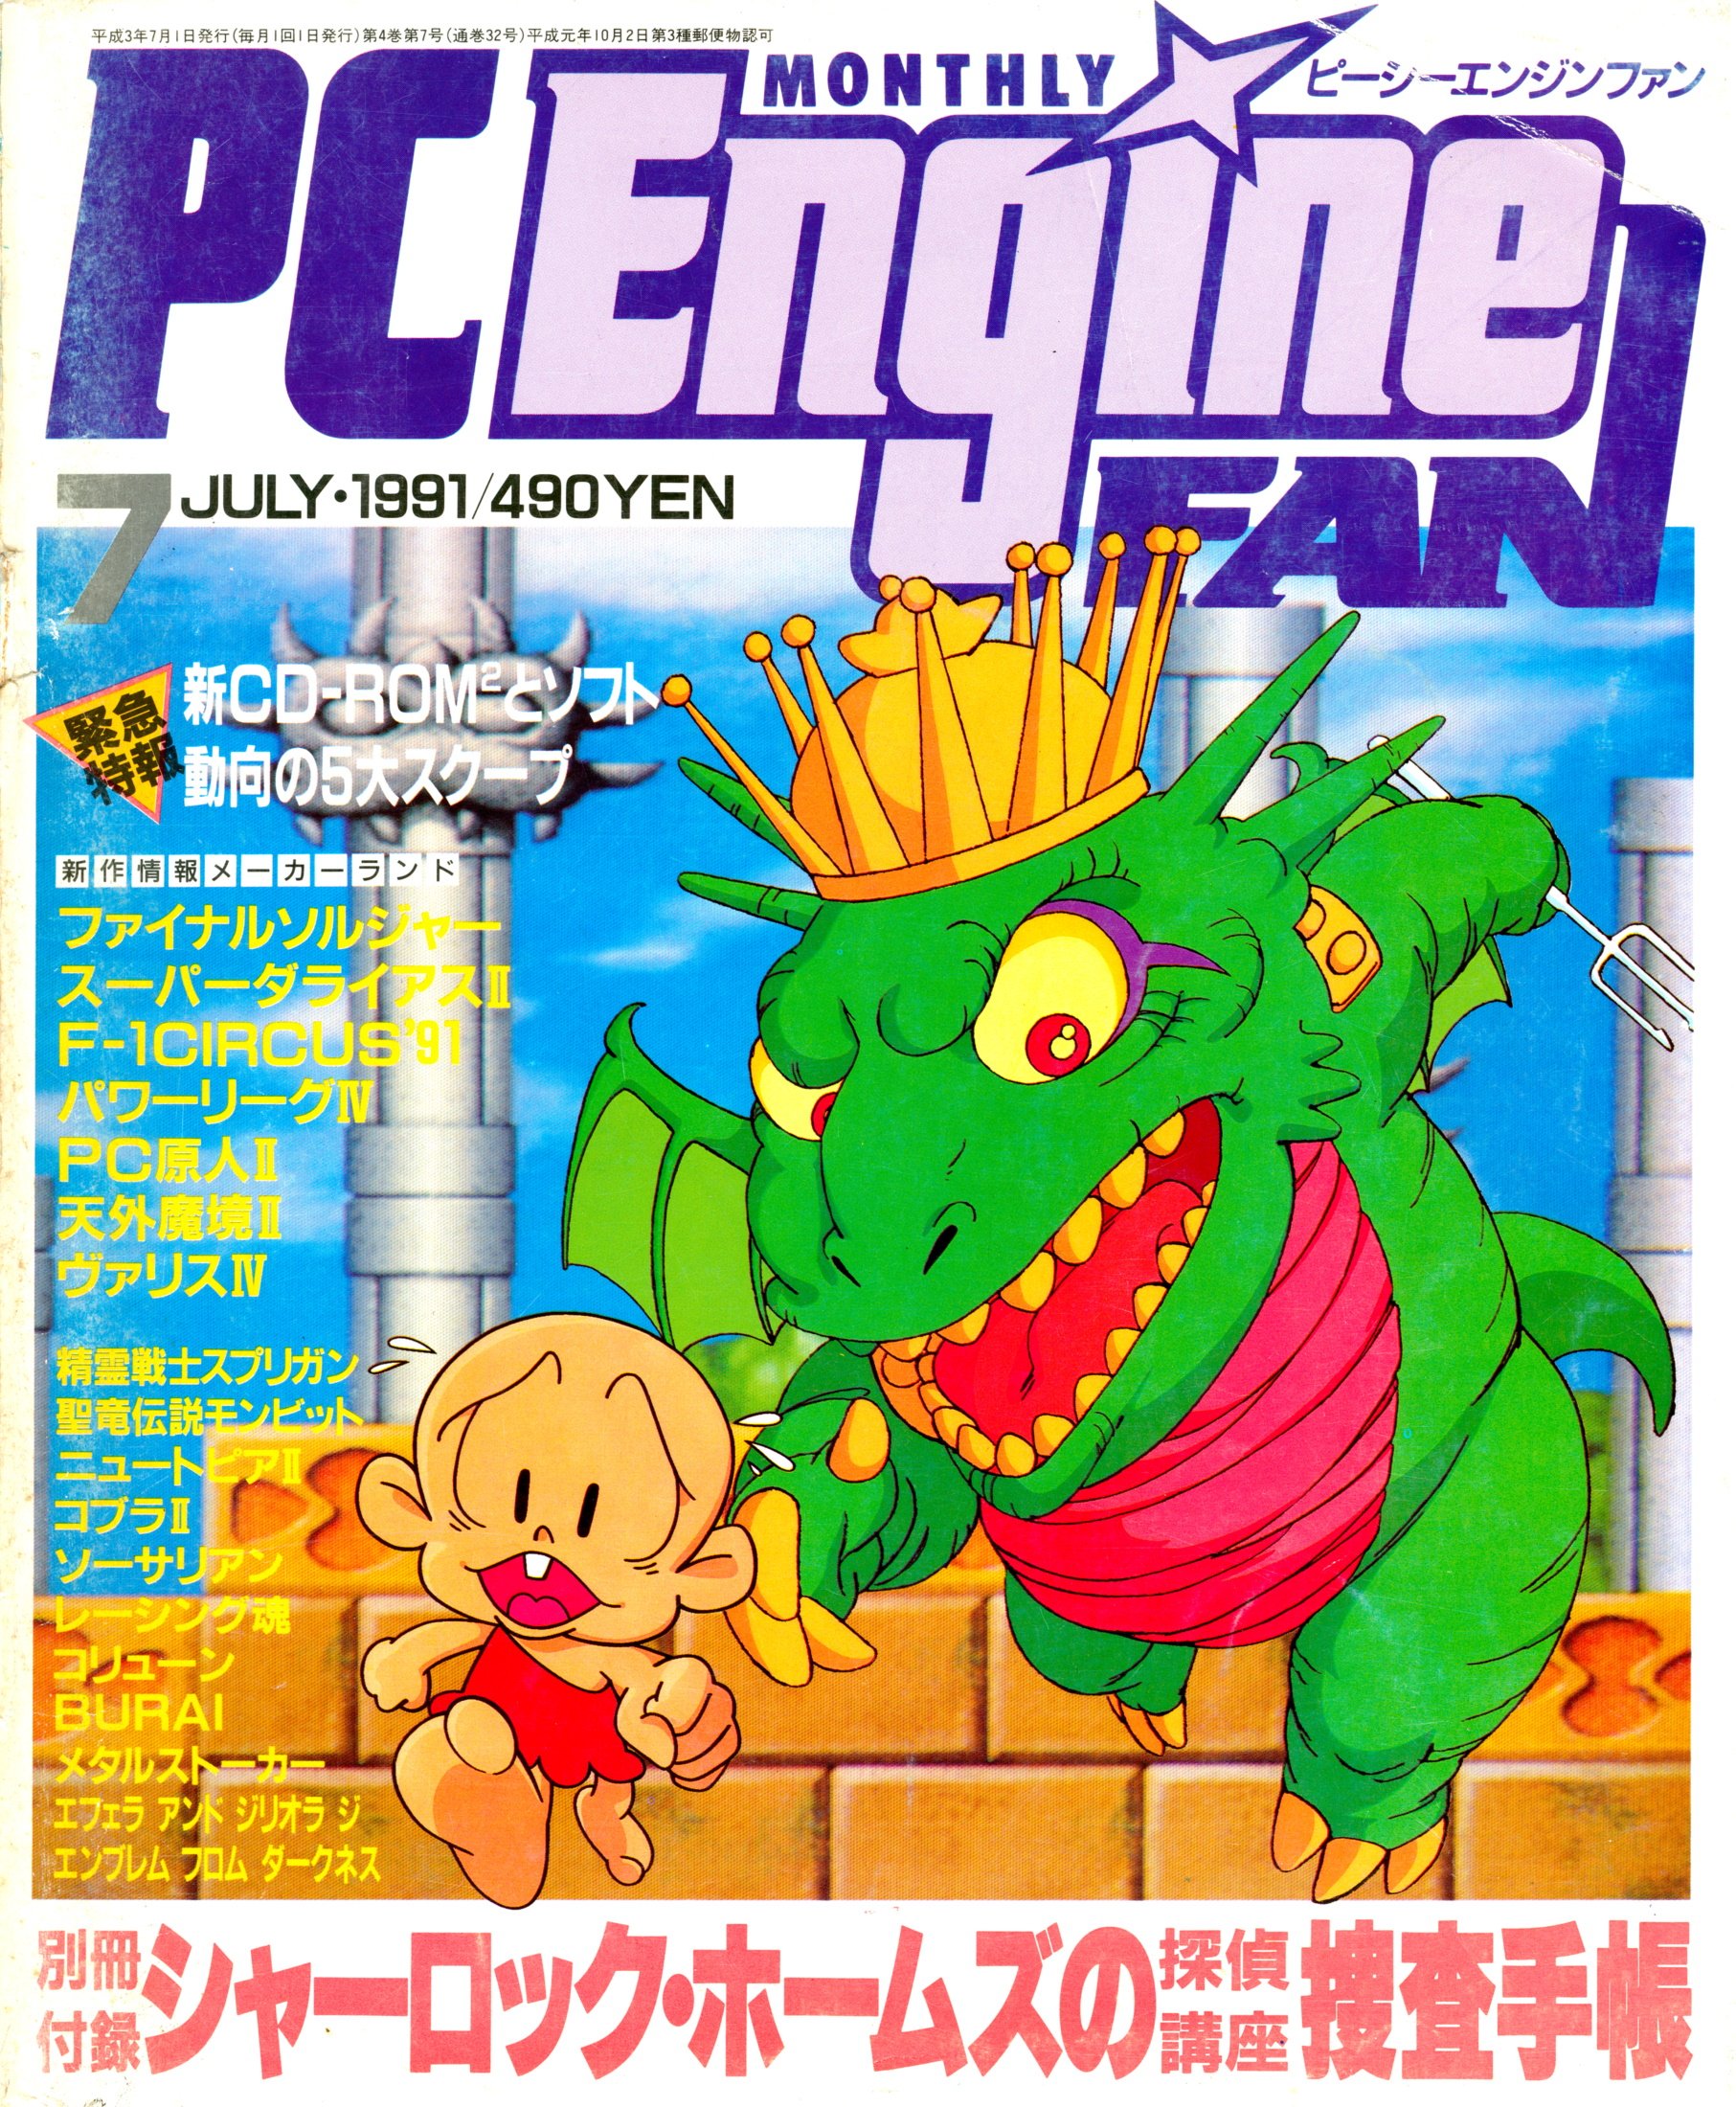 PC Engine Fan (July 1991)